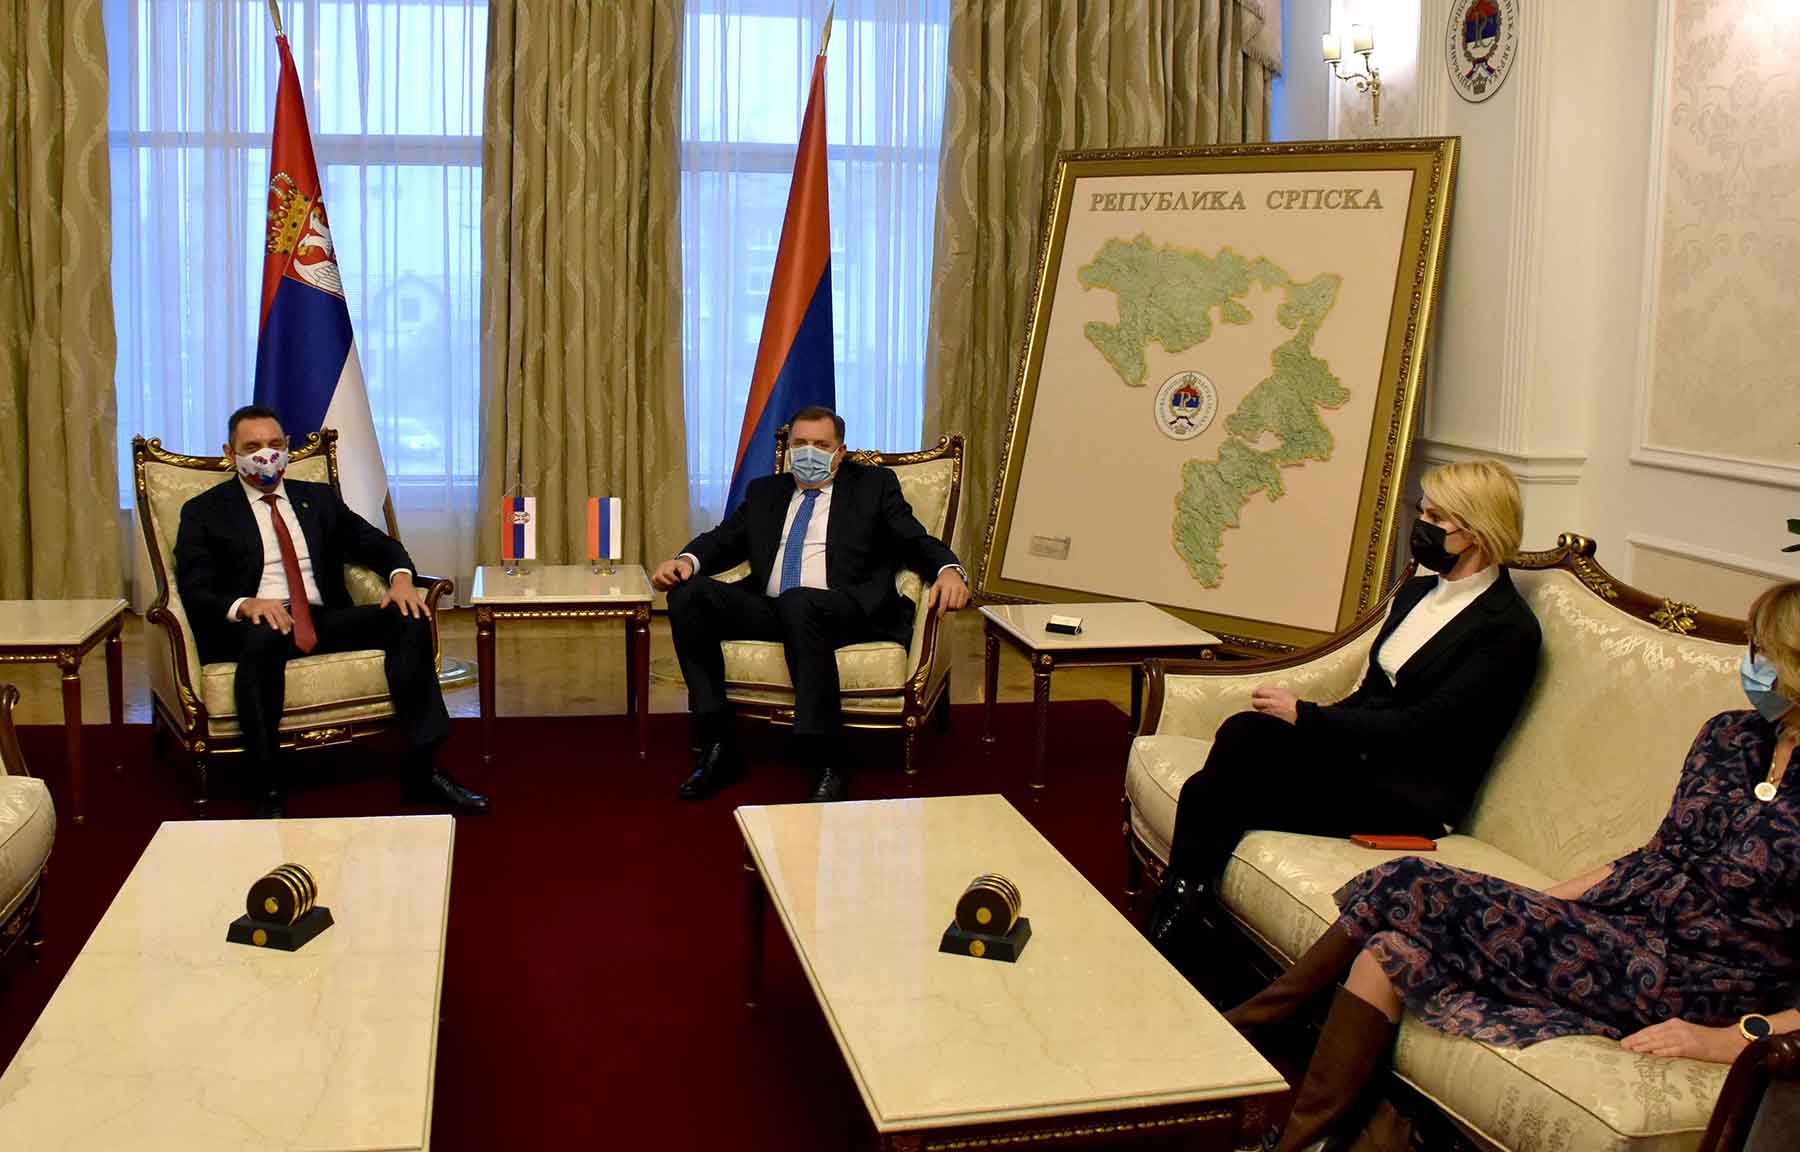 Ministar Vulin: Republika Srpska je uvek spoljnopolitički prioritet Republike Srbije